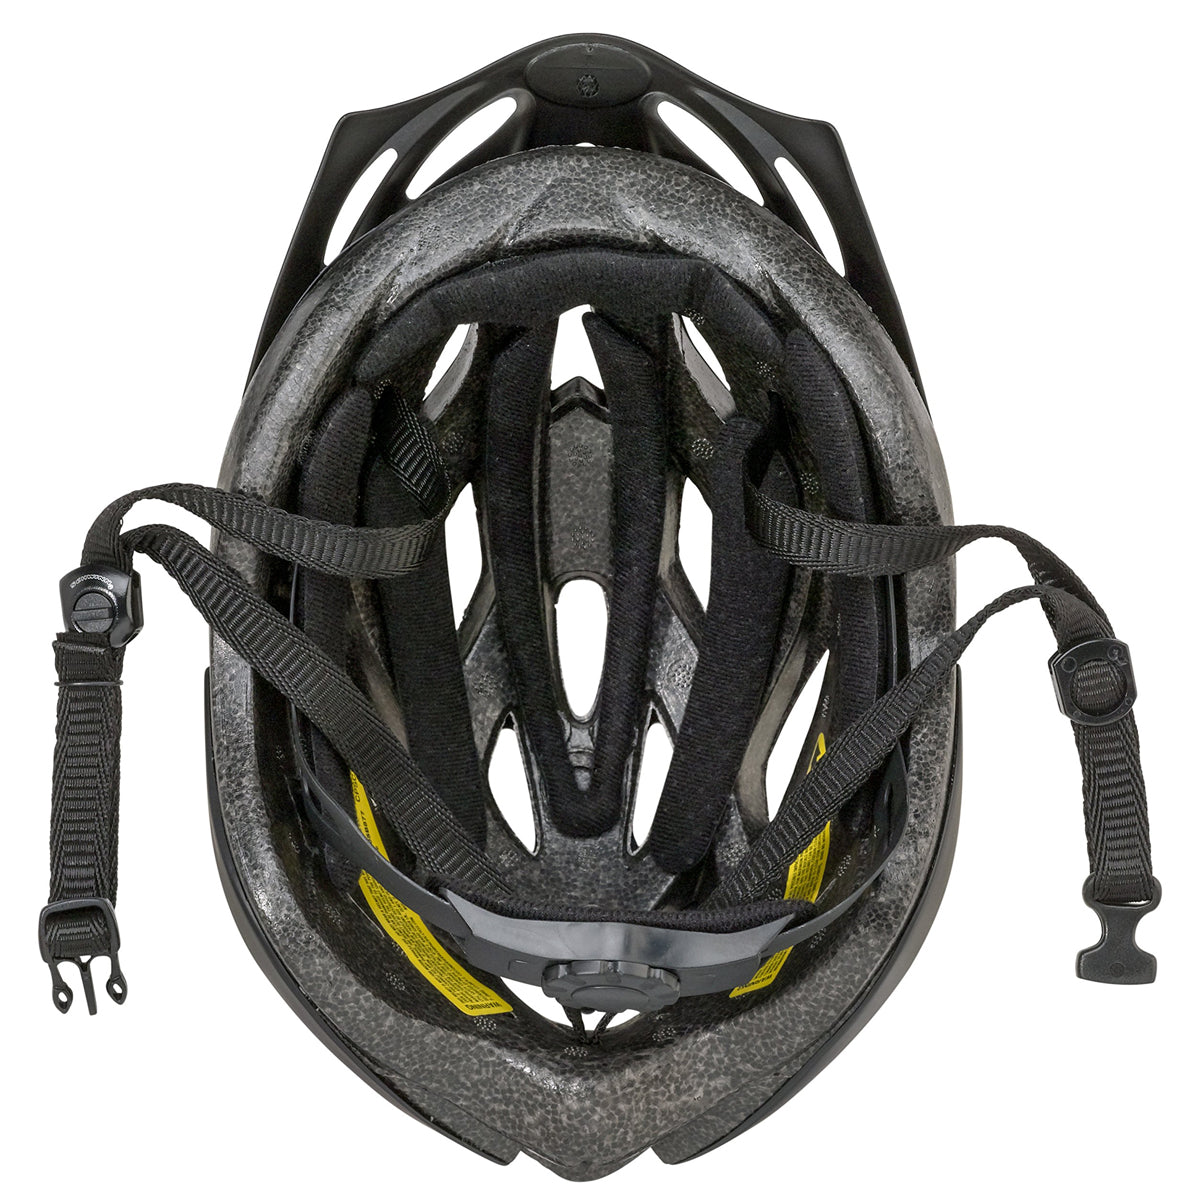 Schwinn Thrasher Bike Helmet.